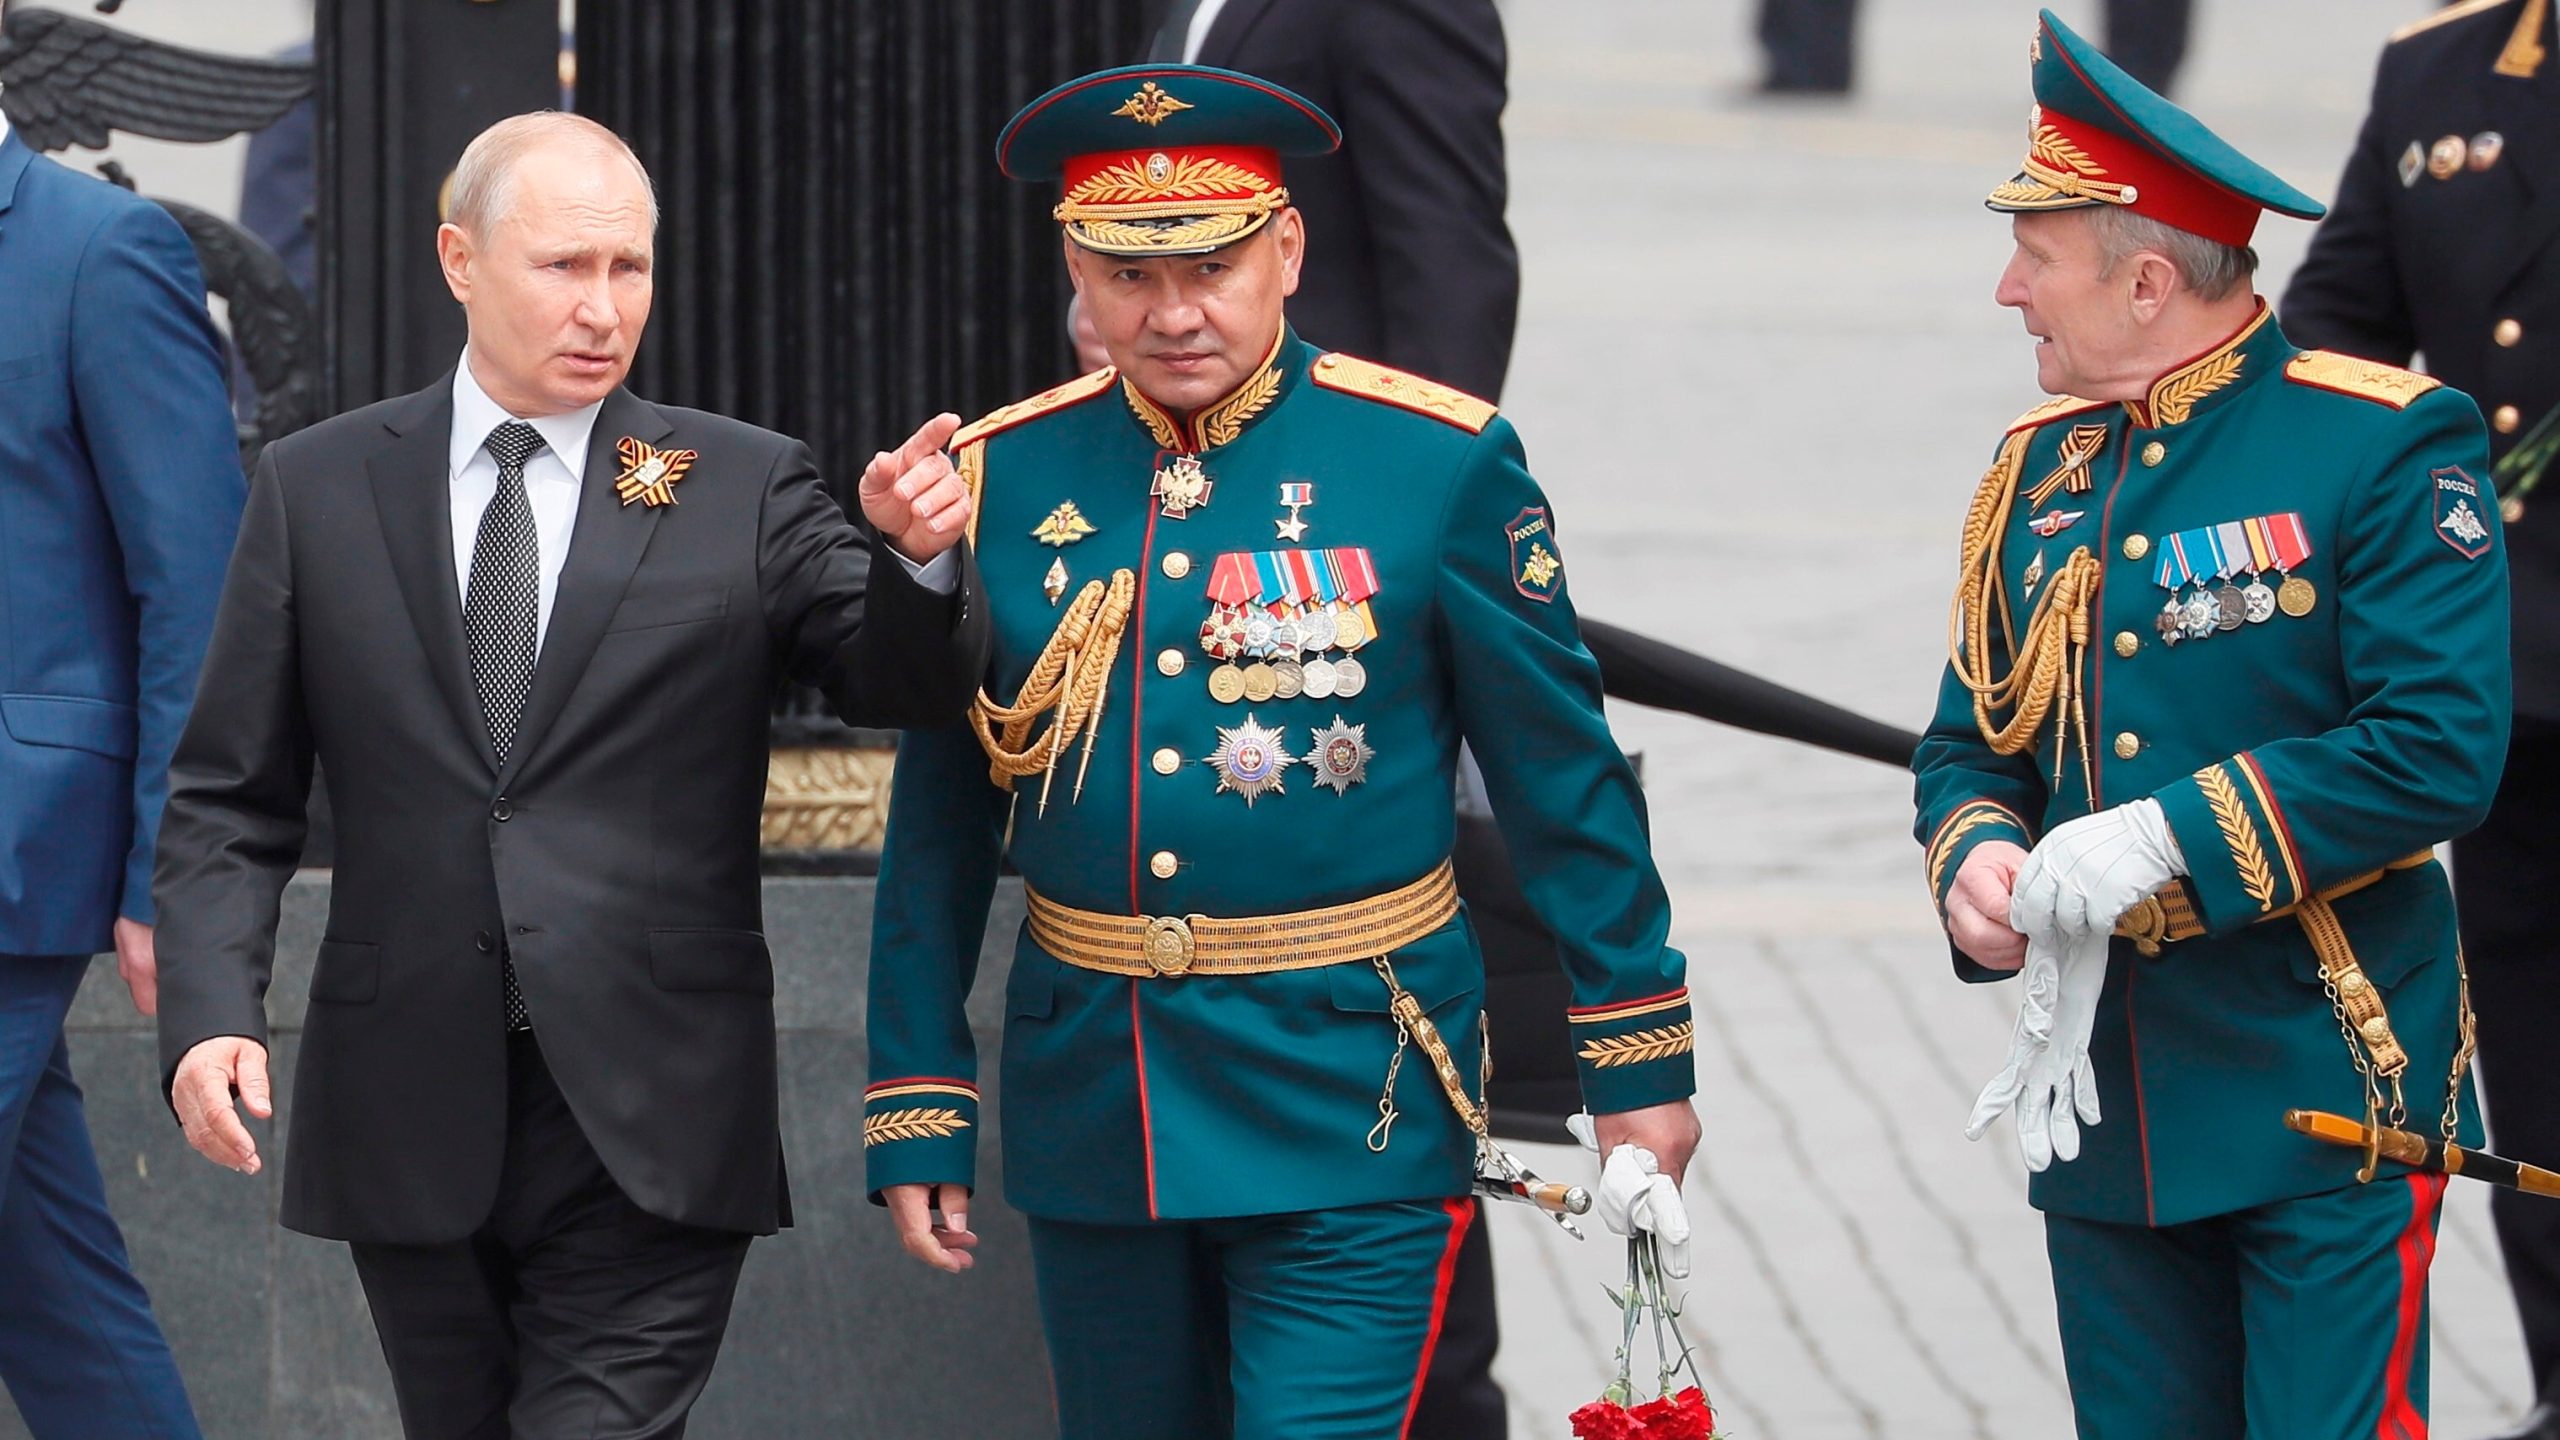 Rusia suspende su participación en tratado de desarme nuclear New Start